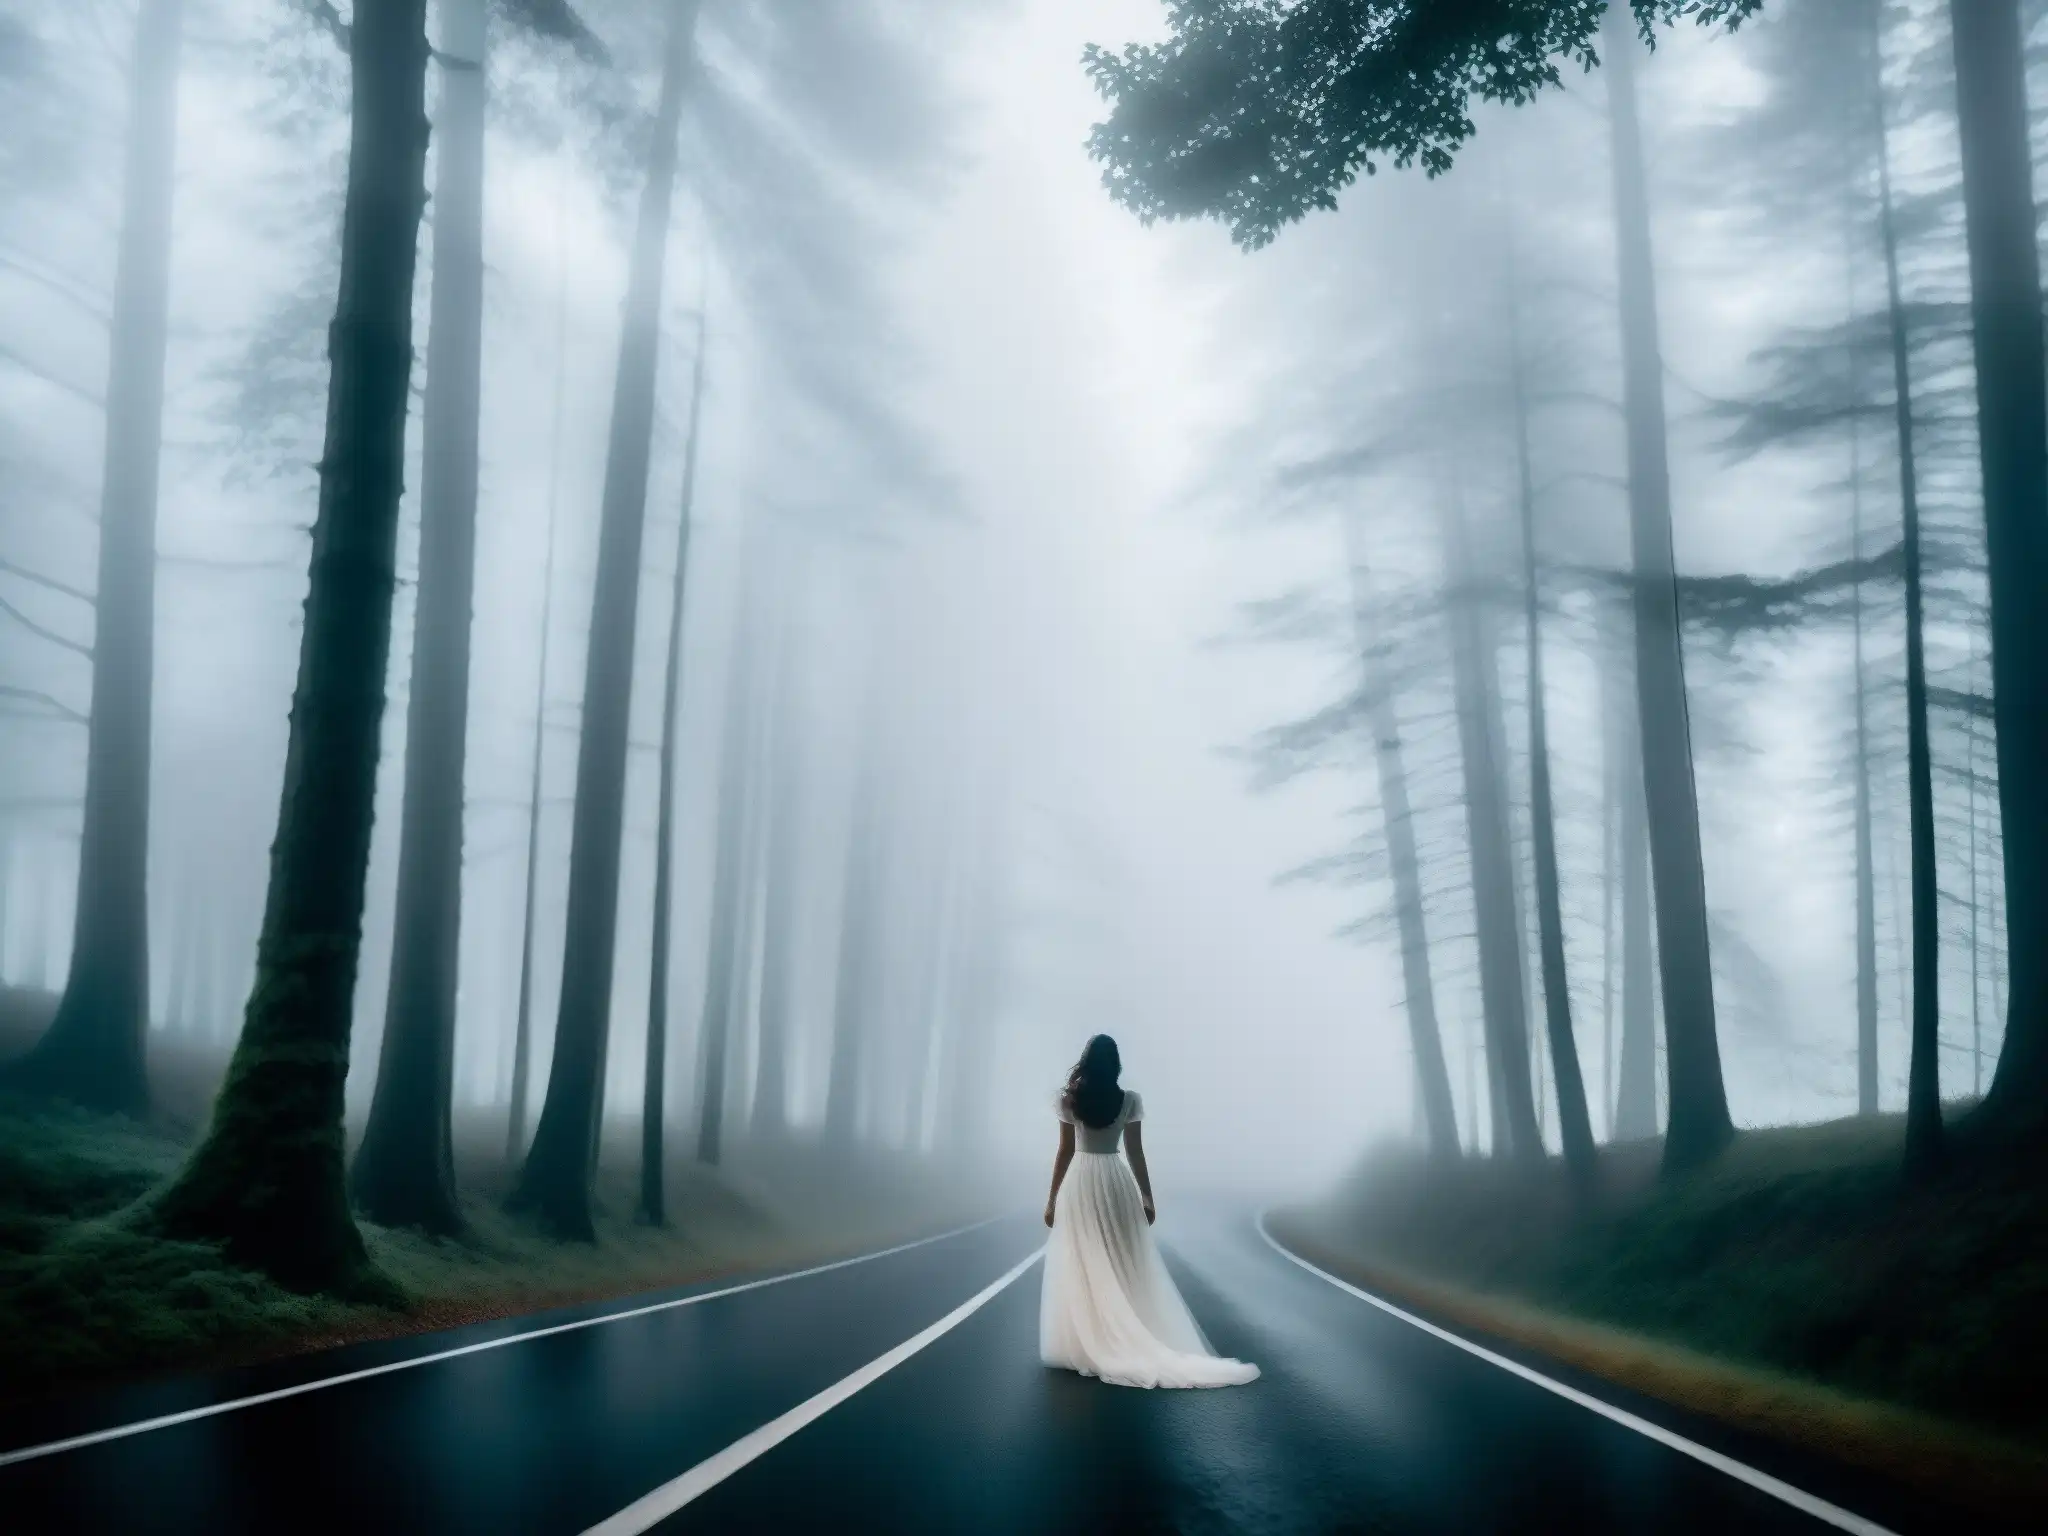 En la misteriosa noche, la carretera serpentea entre árboles cubiertos de niebla